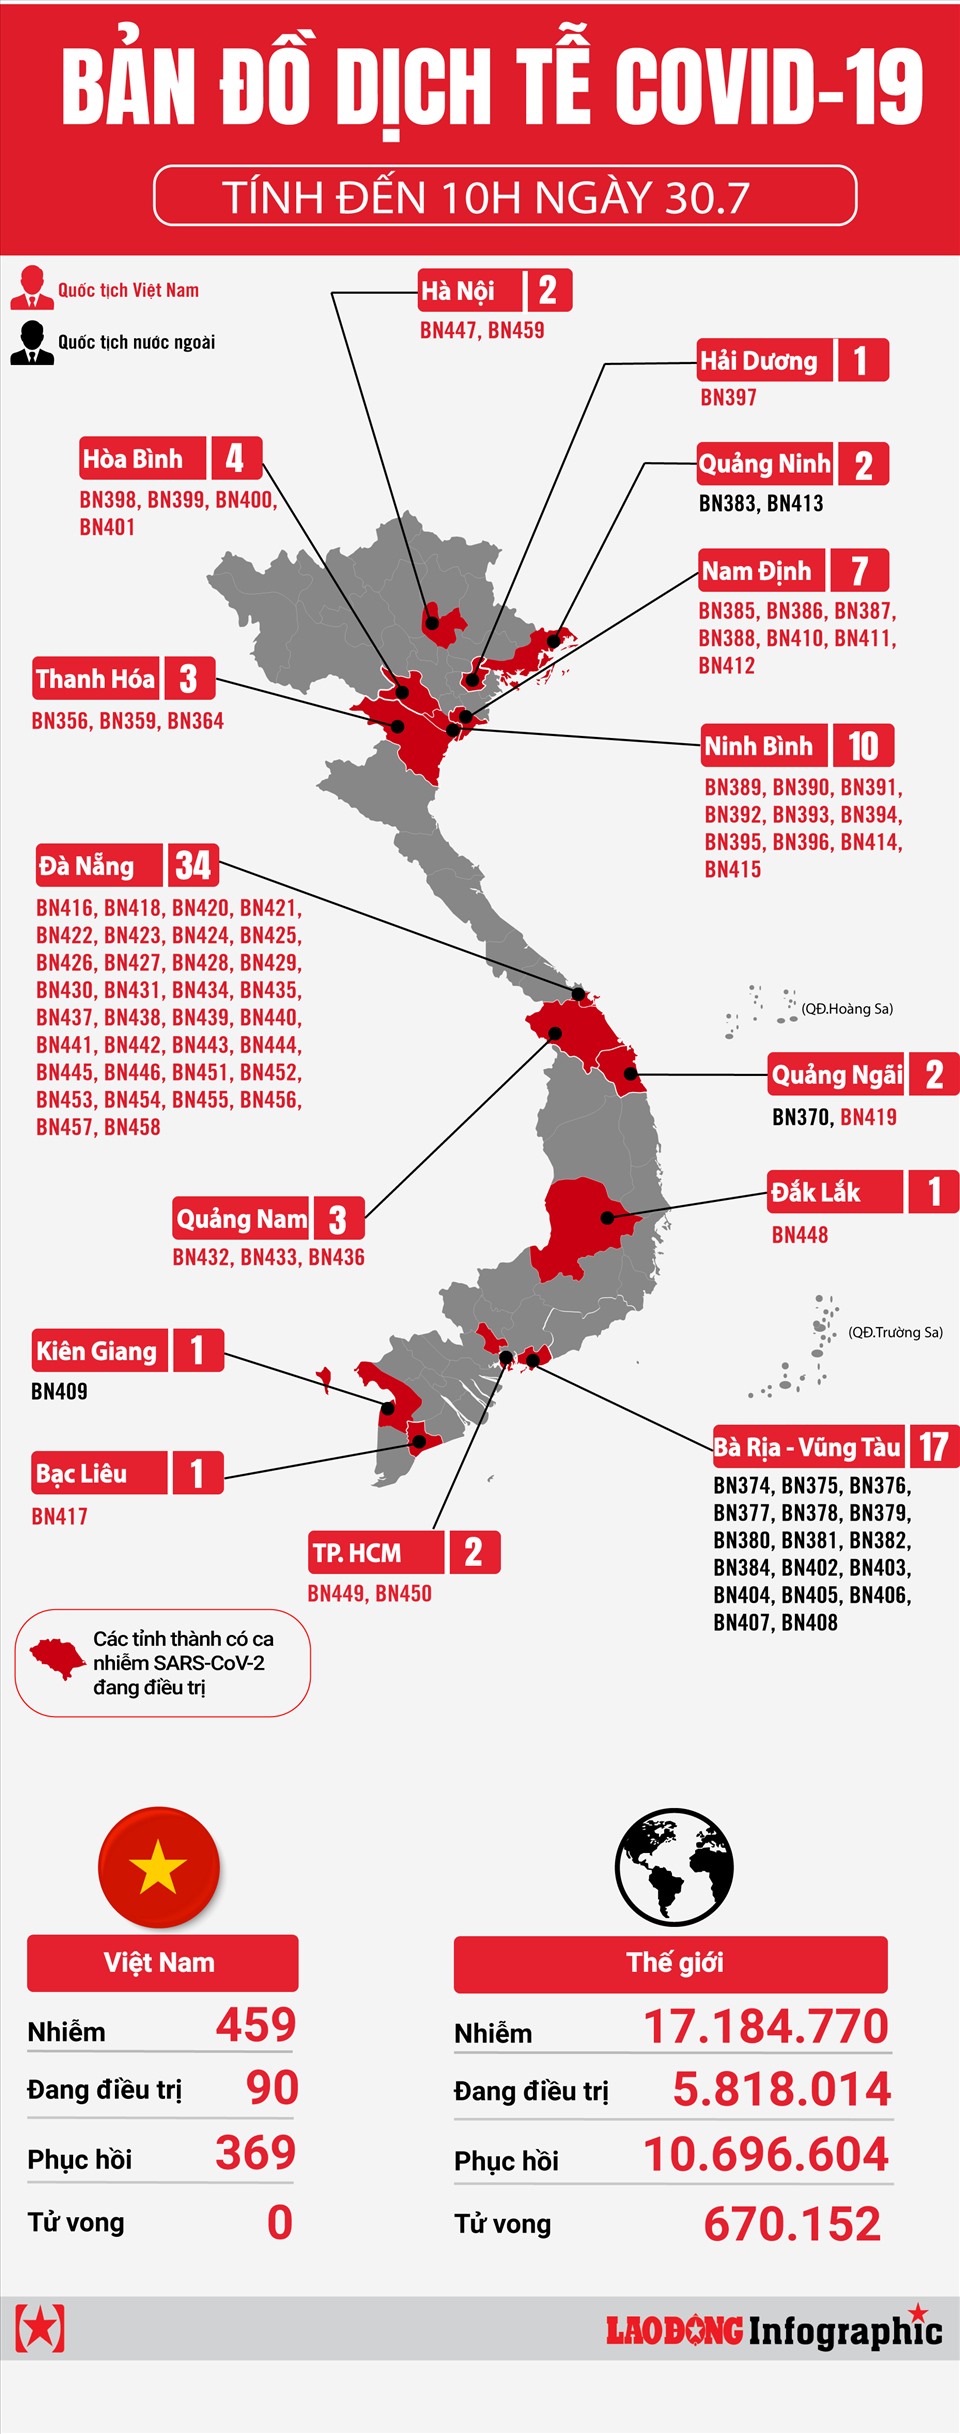 Bản đồ dịch tễ COVID-19 Việt Nam năm 2024: Với sự phát triển của công nghệ, bản đồ dịch tễ COVID-19 Việt Nam năm 2024 trở nên chính xác và cập nhật hơn bao giờ hết. Chính phủ đưa ra công bố thông tin trên bản đồ dịch tễ để giúp người dân nhận được thông tin chính xác và đưa ra biện pháp phòng chống dịch bệnh hợp lý.